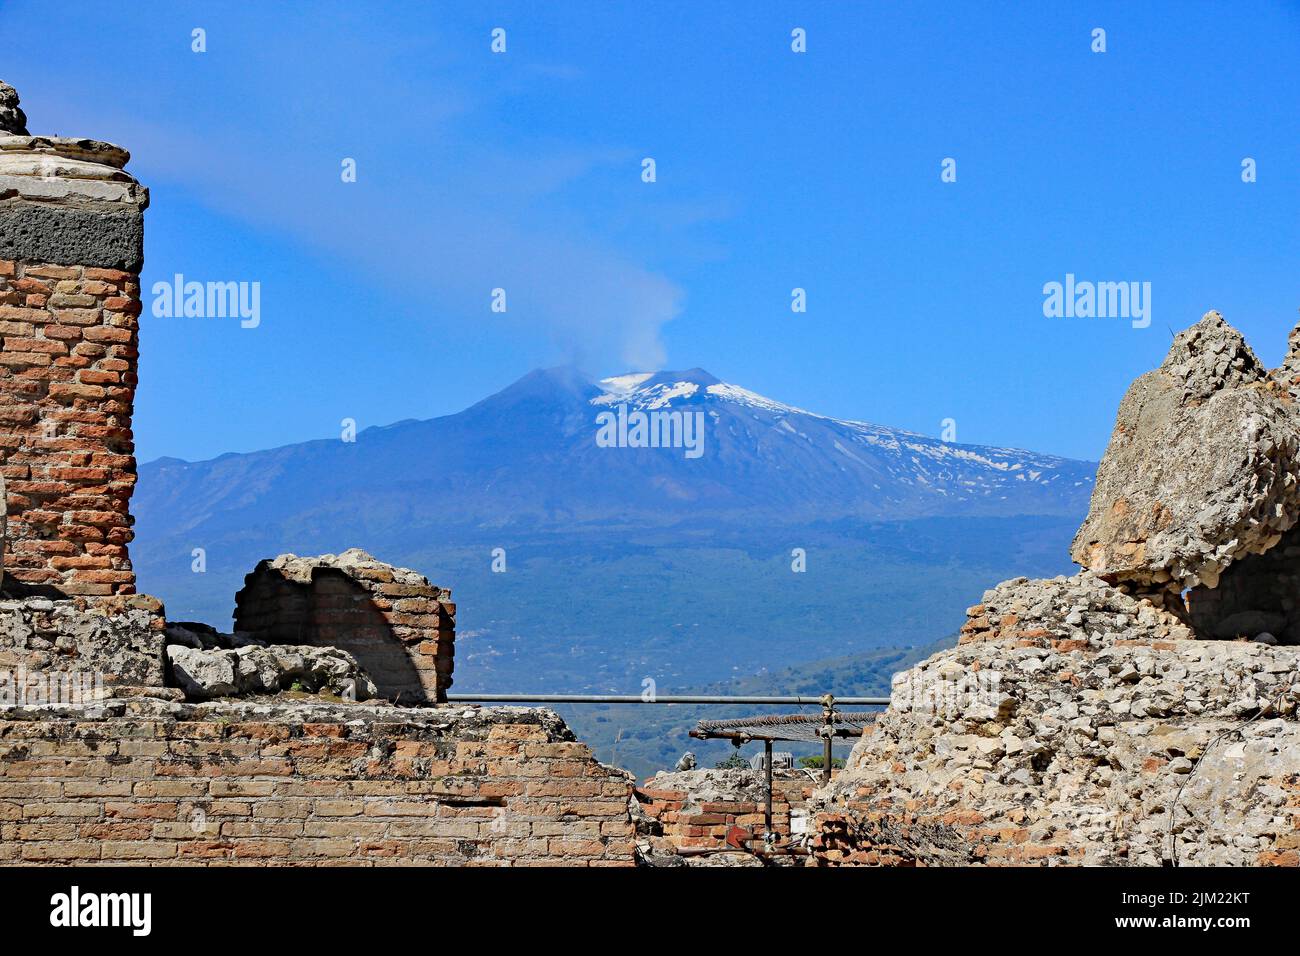 Views around Taormina, Sicily Stock Photo